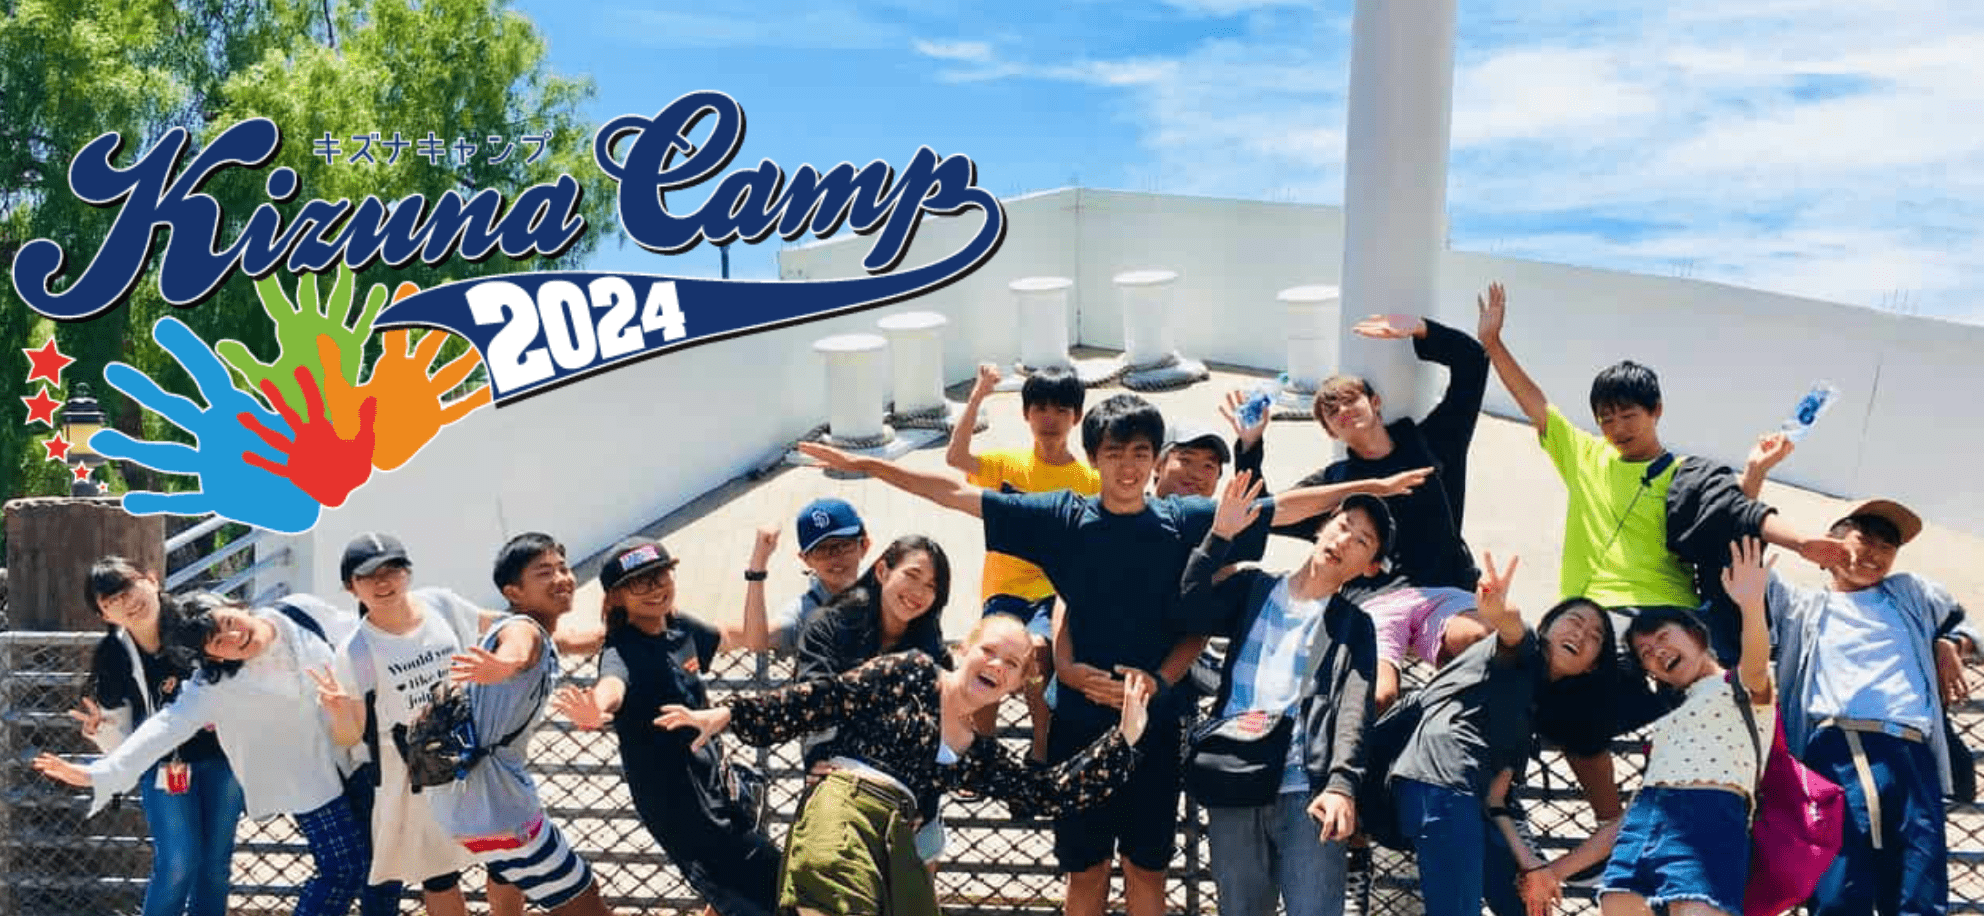 自分が変わる、世界が近づく2週間 “KIZUNA CAMP 2024” @UCSD